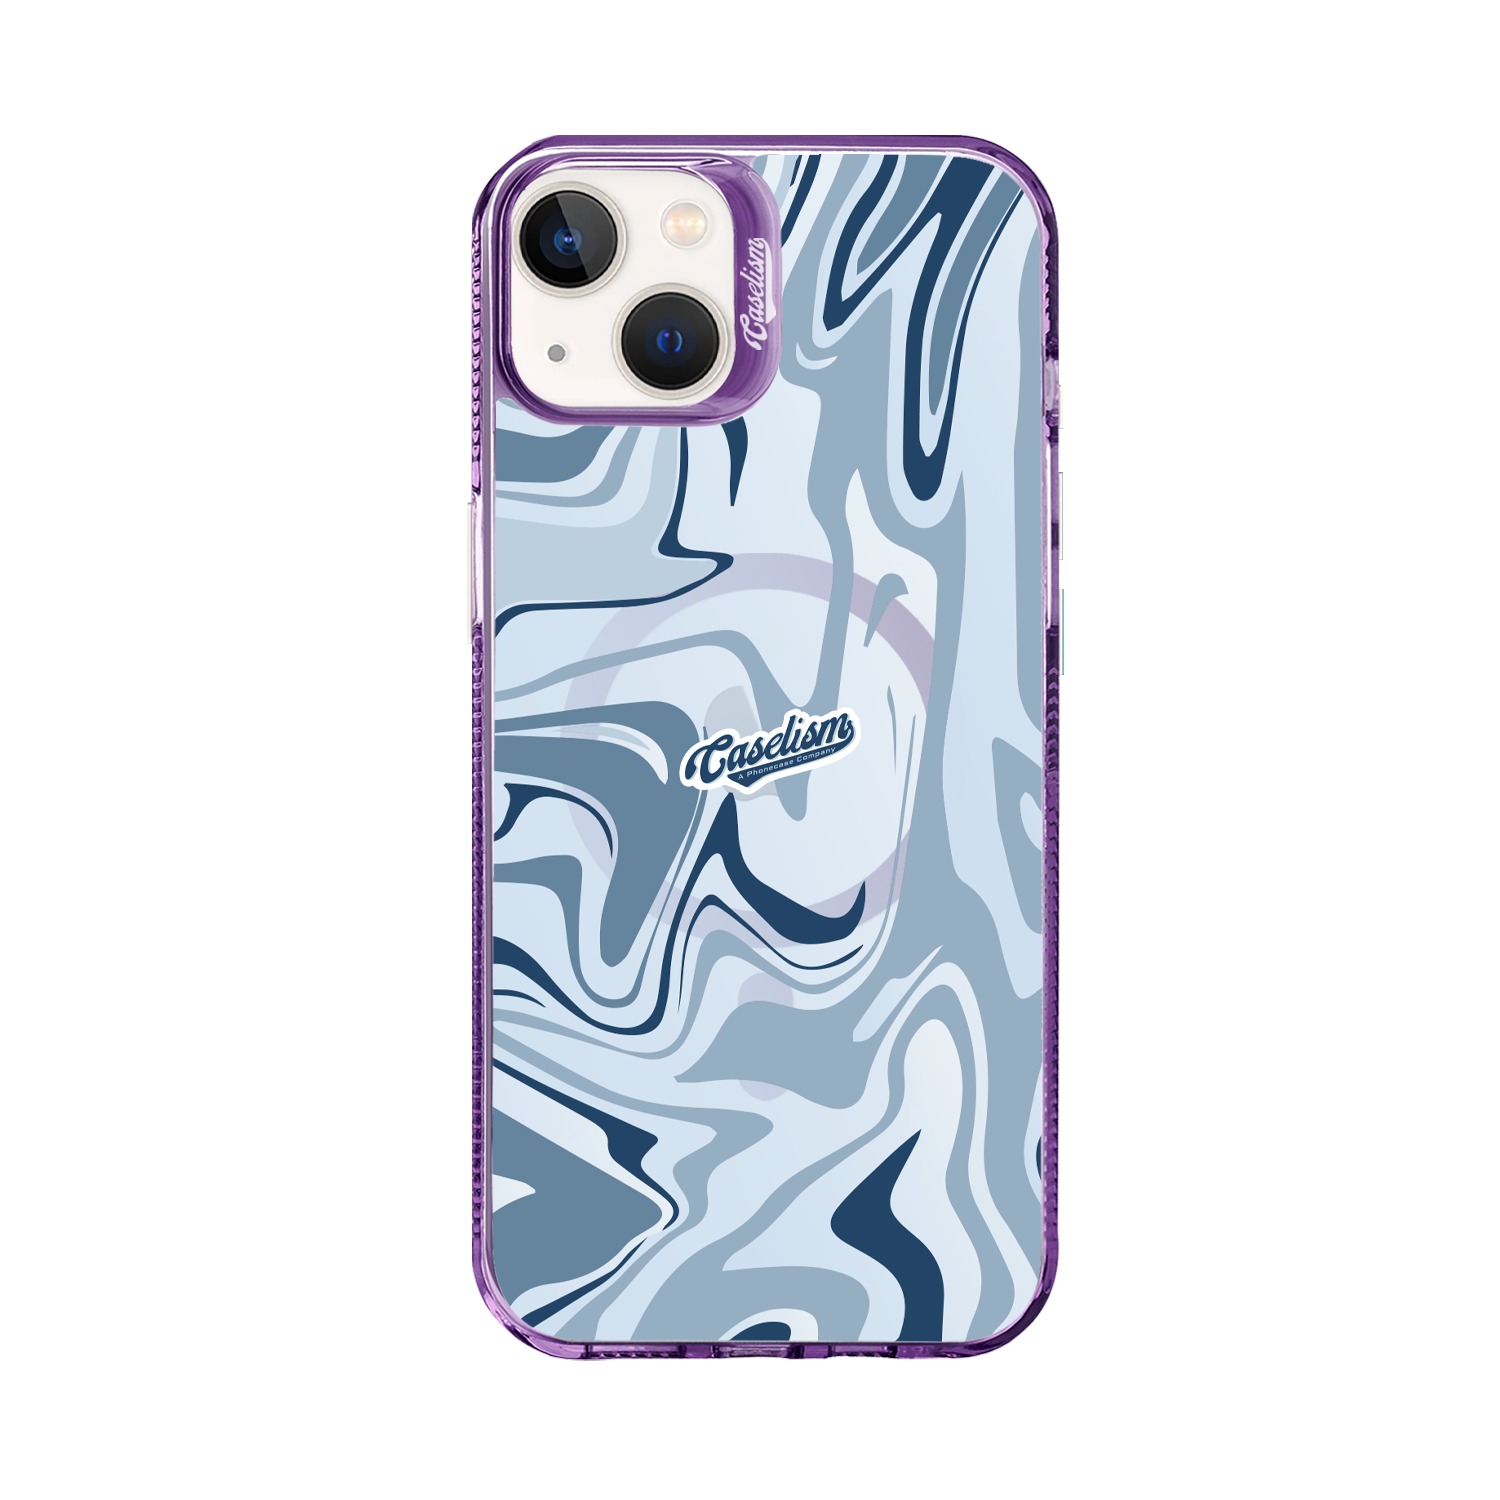 CASE010 - ColorLite Case for iPhone